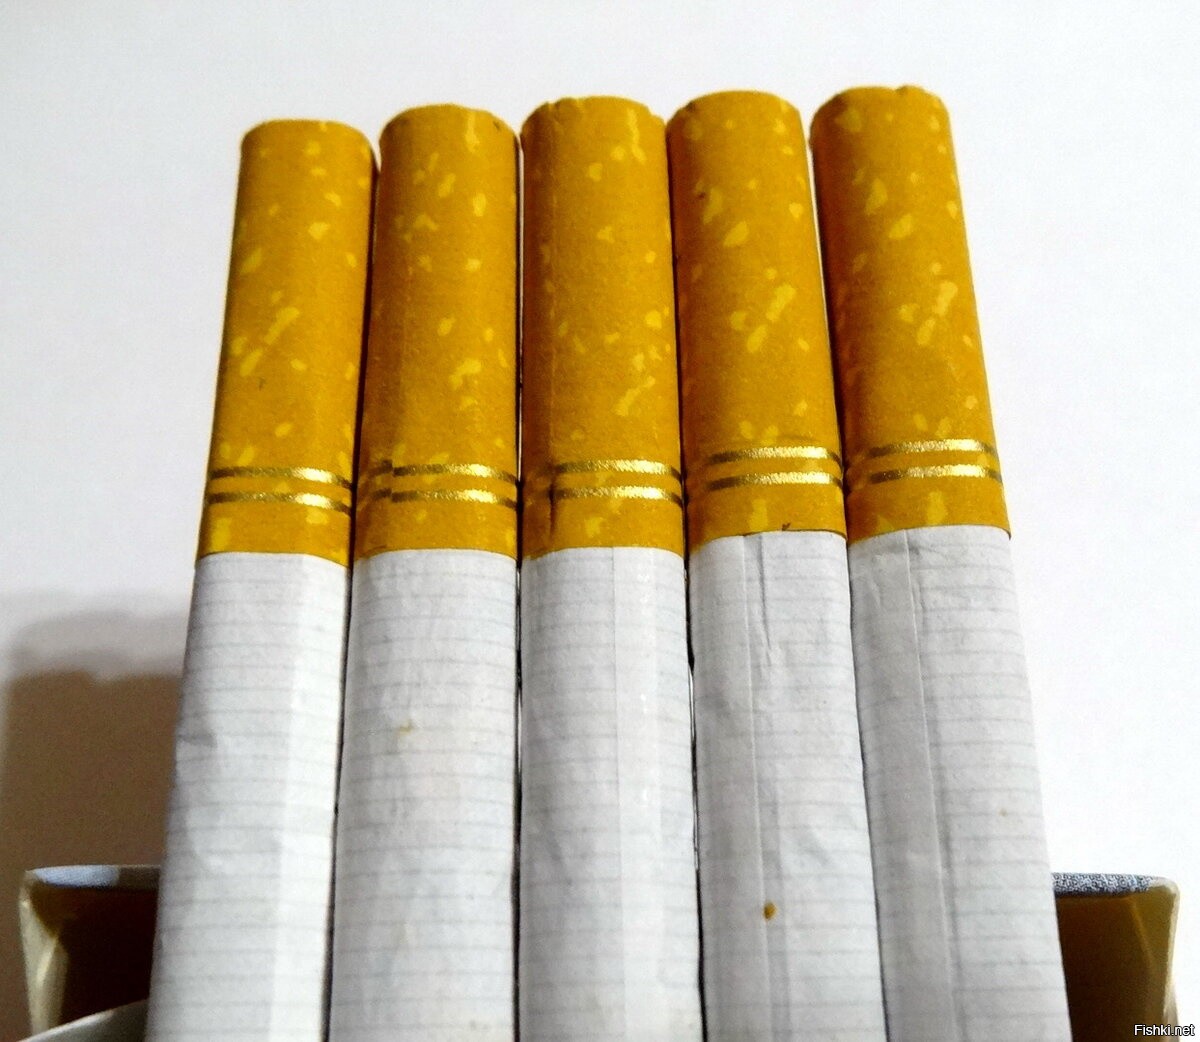 Сигареты с золотым фильтром. Сигареты с фильтром. Сигареты с желтым фильтром. Сигареты с золотой полоской. Сигареты с золотой полоской на фильтре.